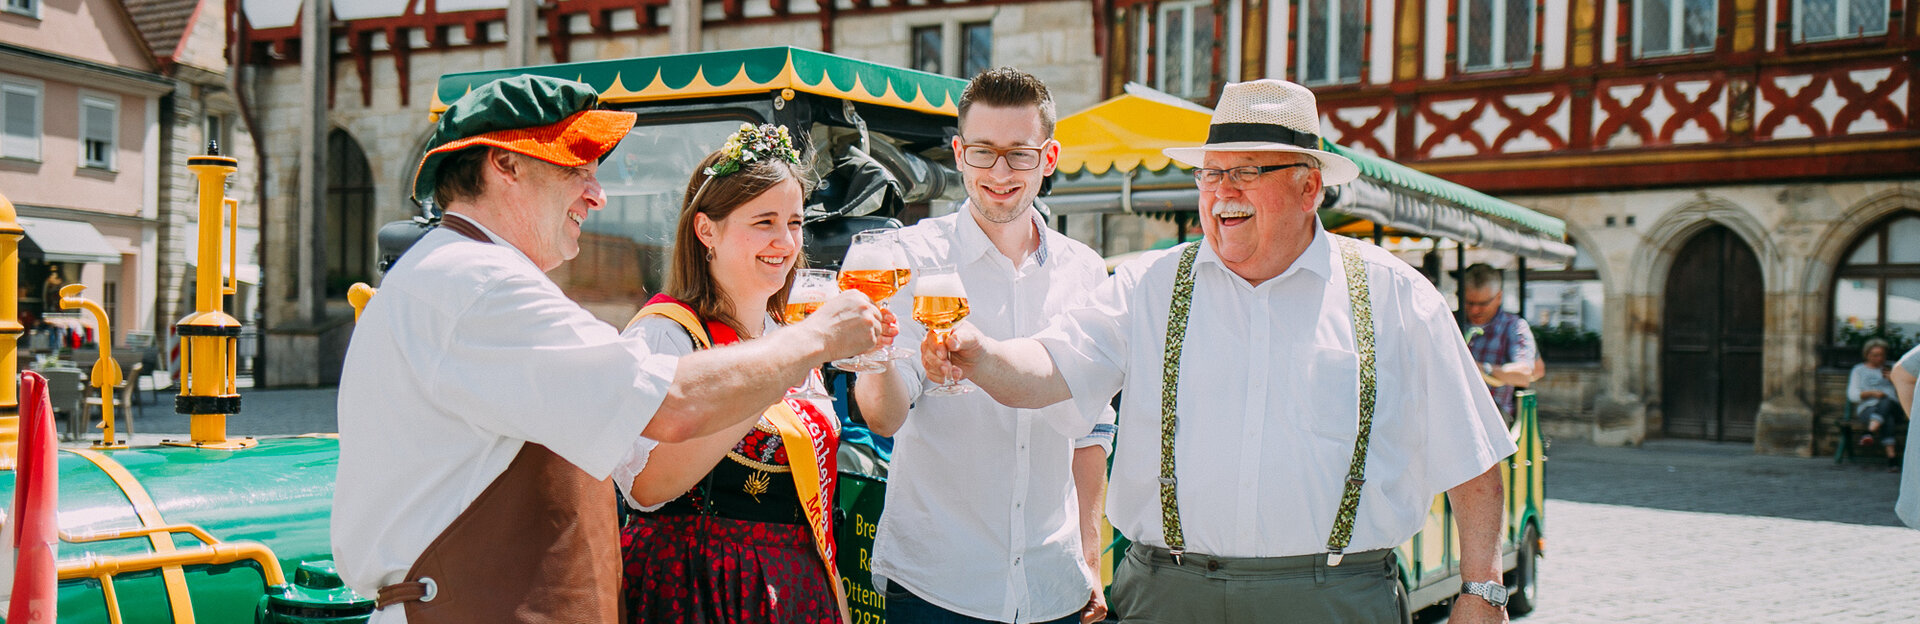 Bierkönigin und drei Männer stoßen mit Bierkrügen vor dem Fachwerk-Rathaus an